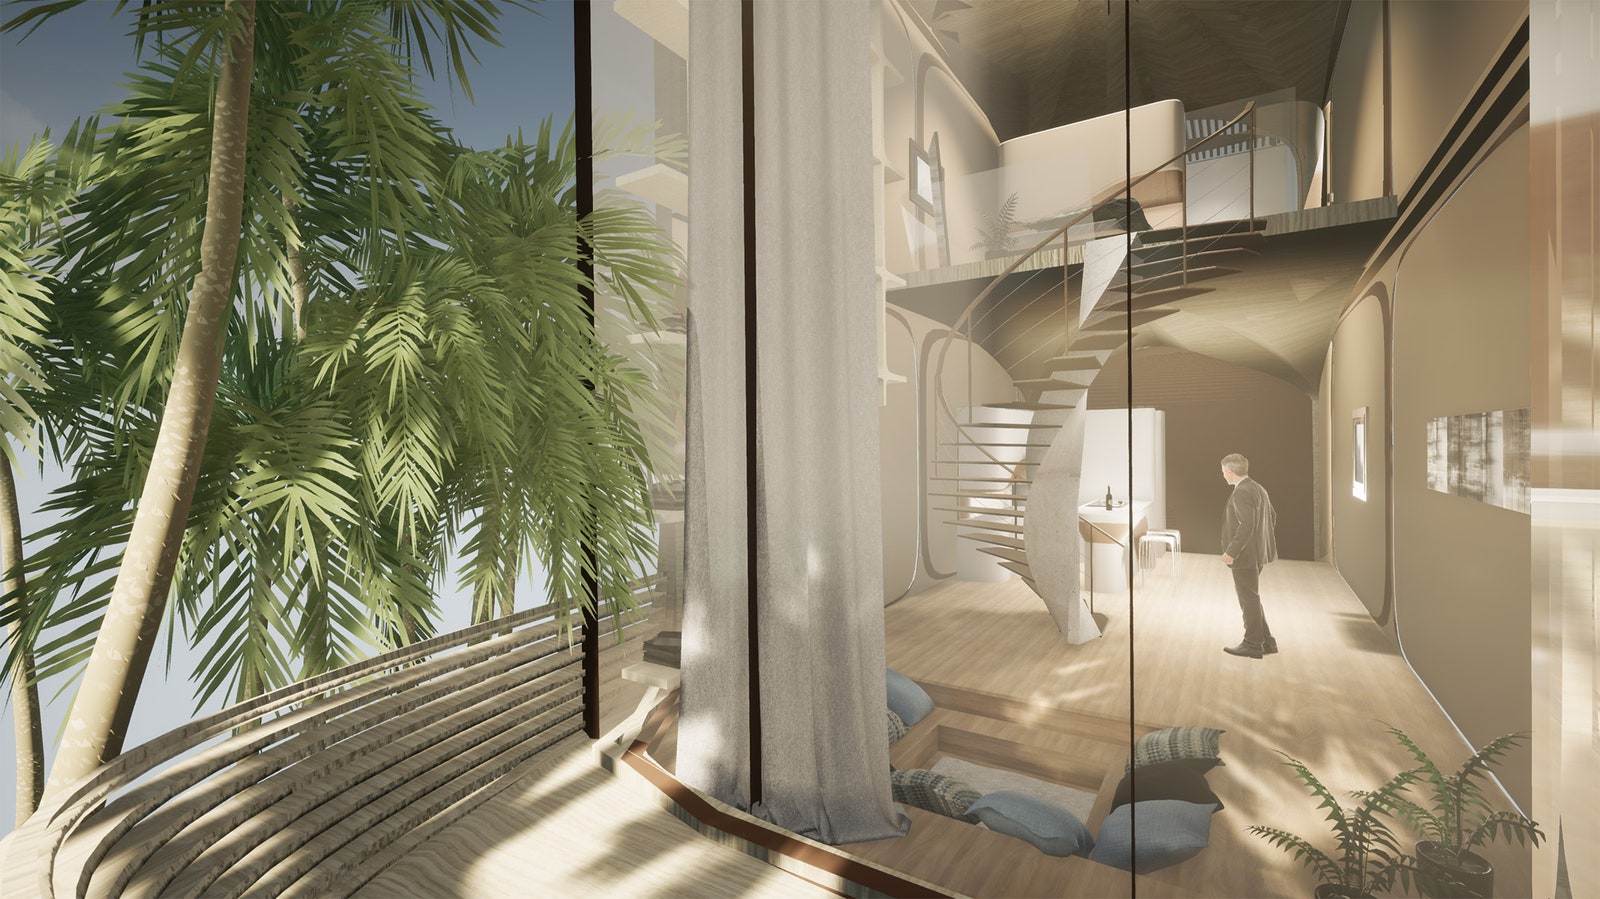 Проект модульного жилья от Zaha Hadid Architects для острова Роатан